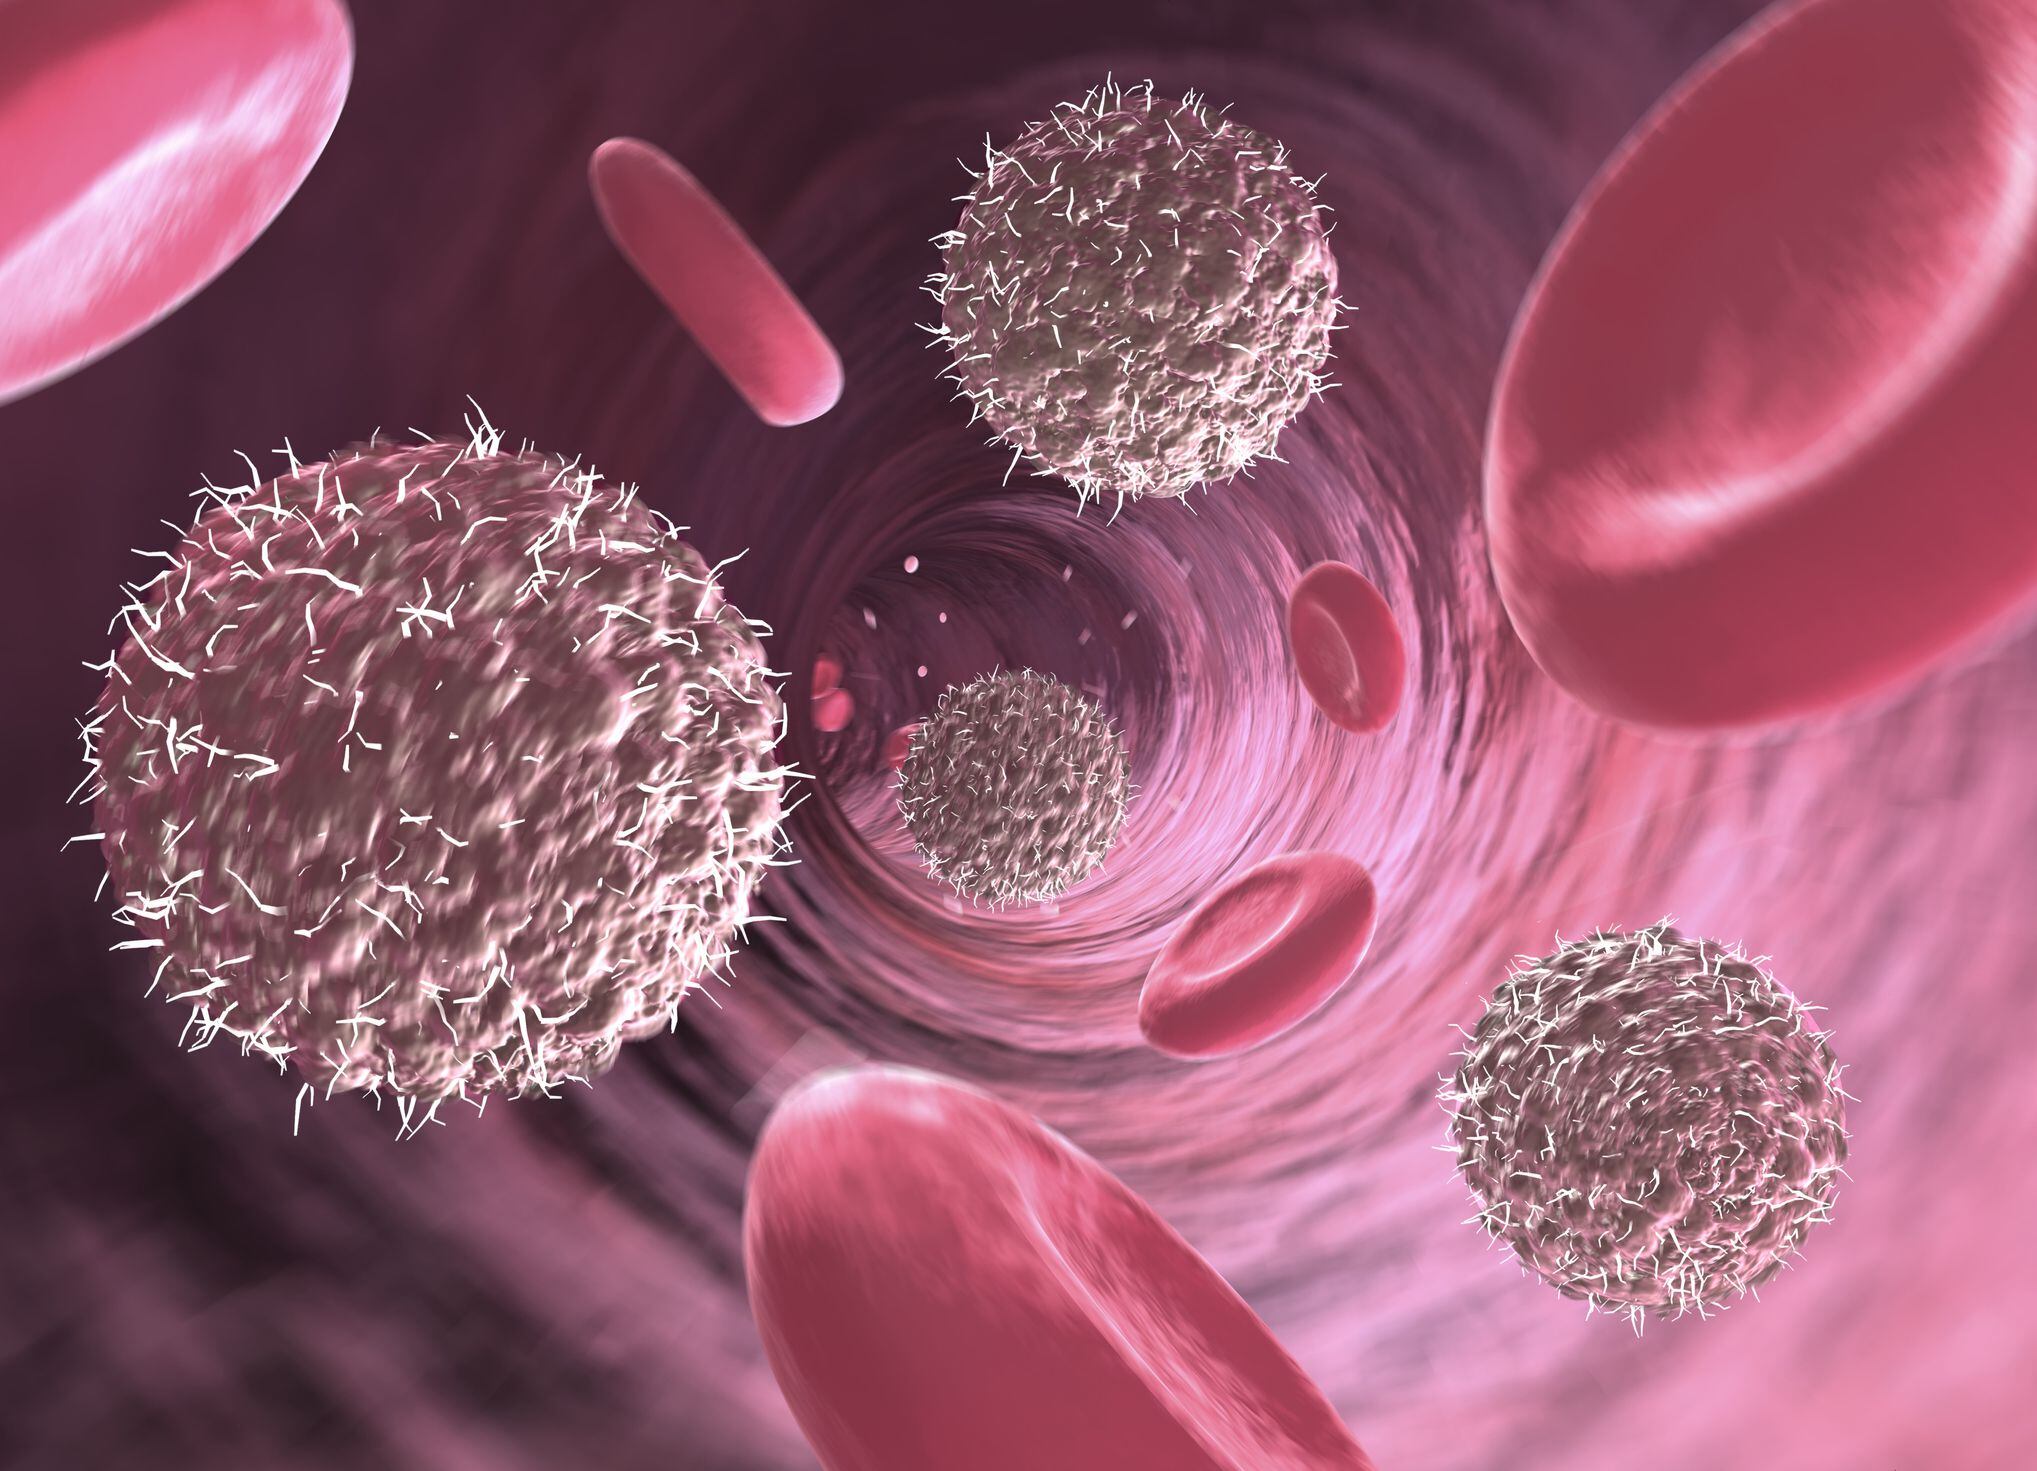 Linfocitos y glóbulos rojos en vaso sanguíneo, sistema inmunológico, enfermedades autoinmunes